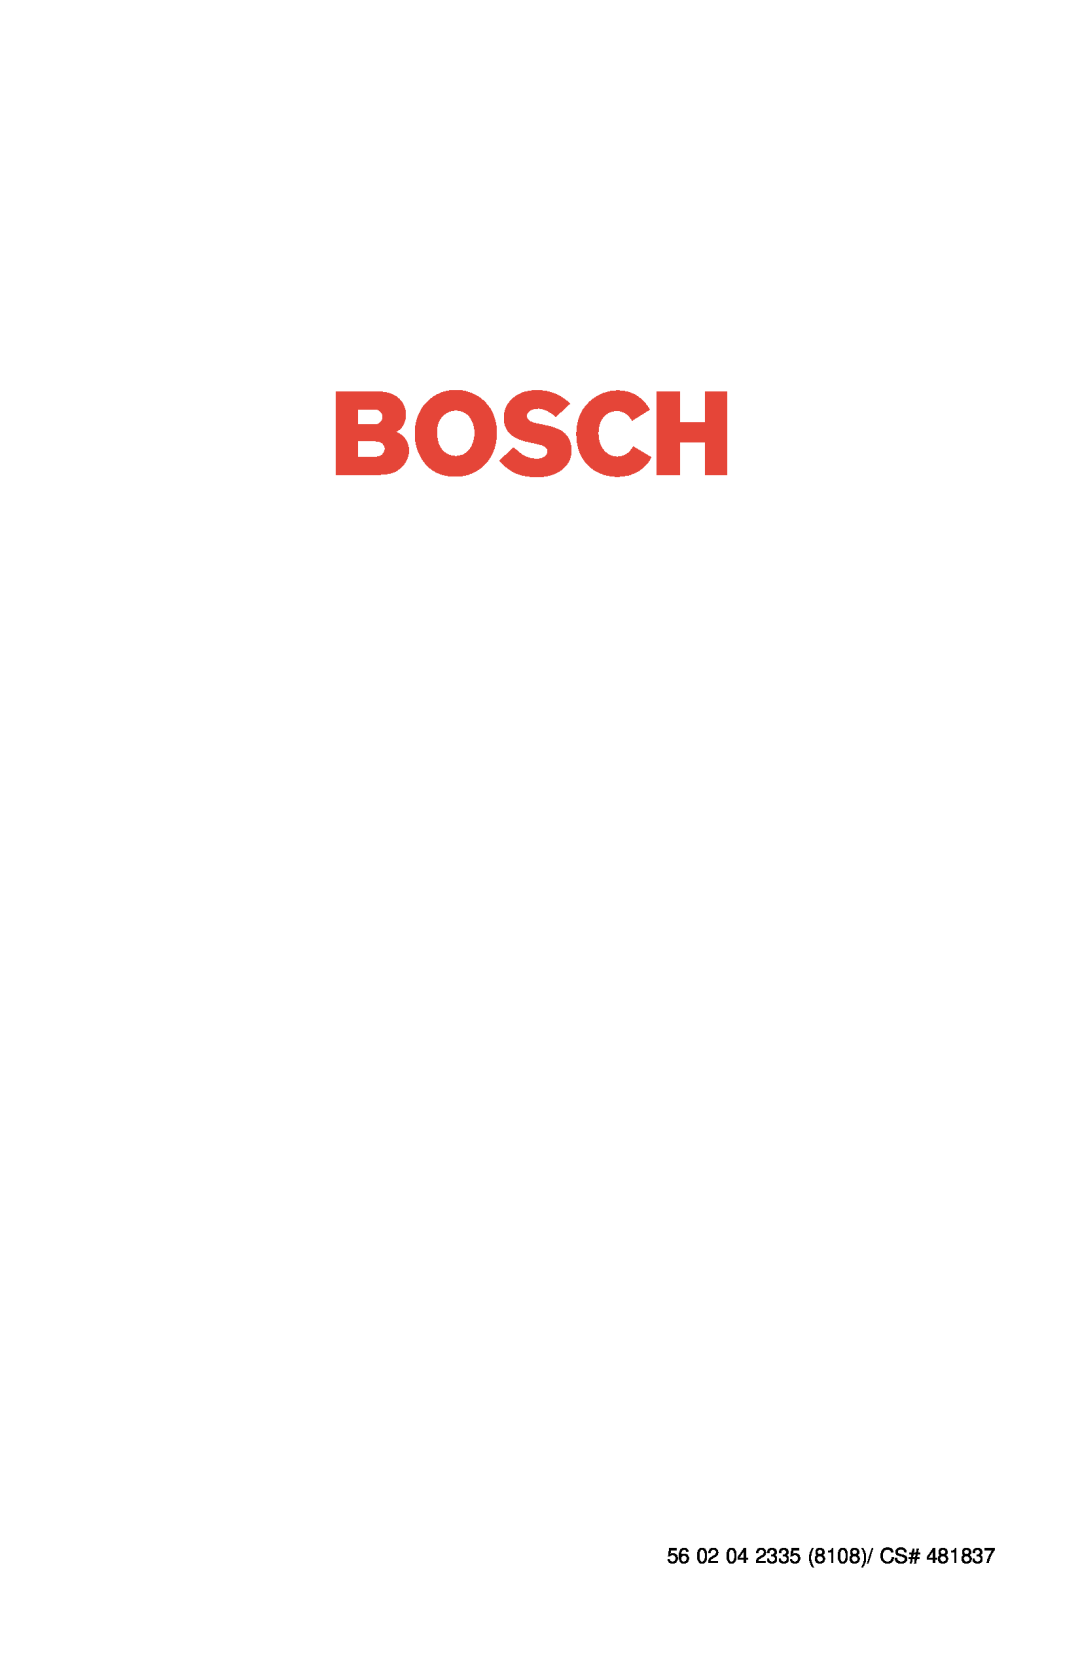 Bosch Appliances SHV 4300, SHV 6800, SHV 4800, SHU 5300, SHU 9950, SHU 3131, SHU 3300, SHU 9920, SHU 4320 56 02 04 2335 8108/ CS# 